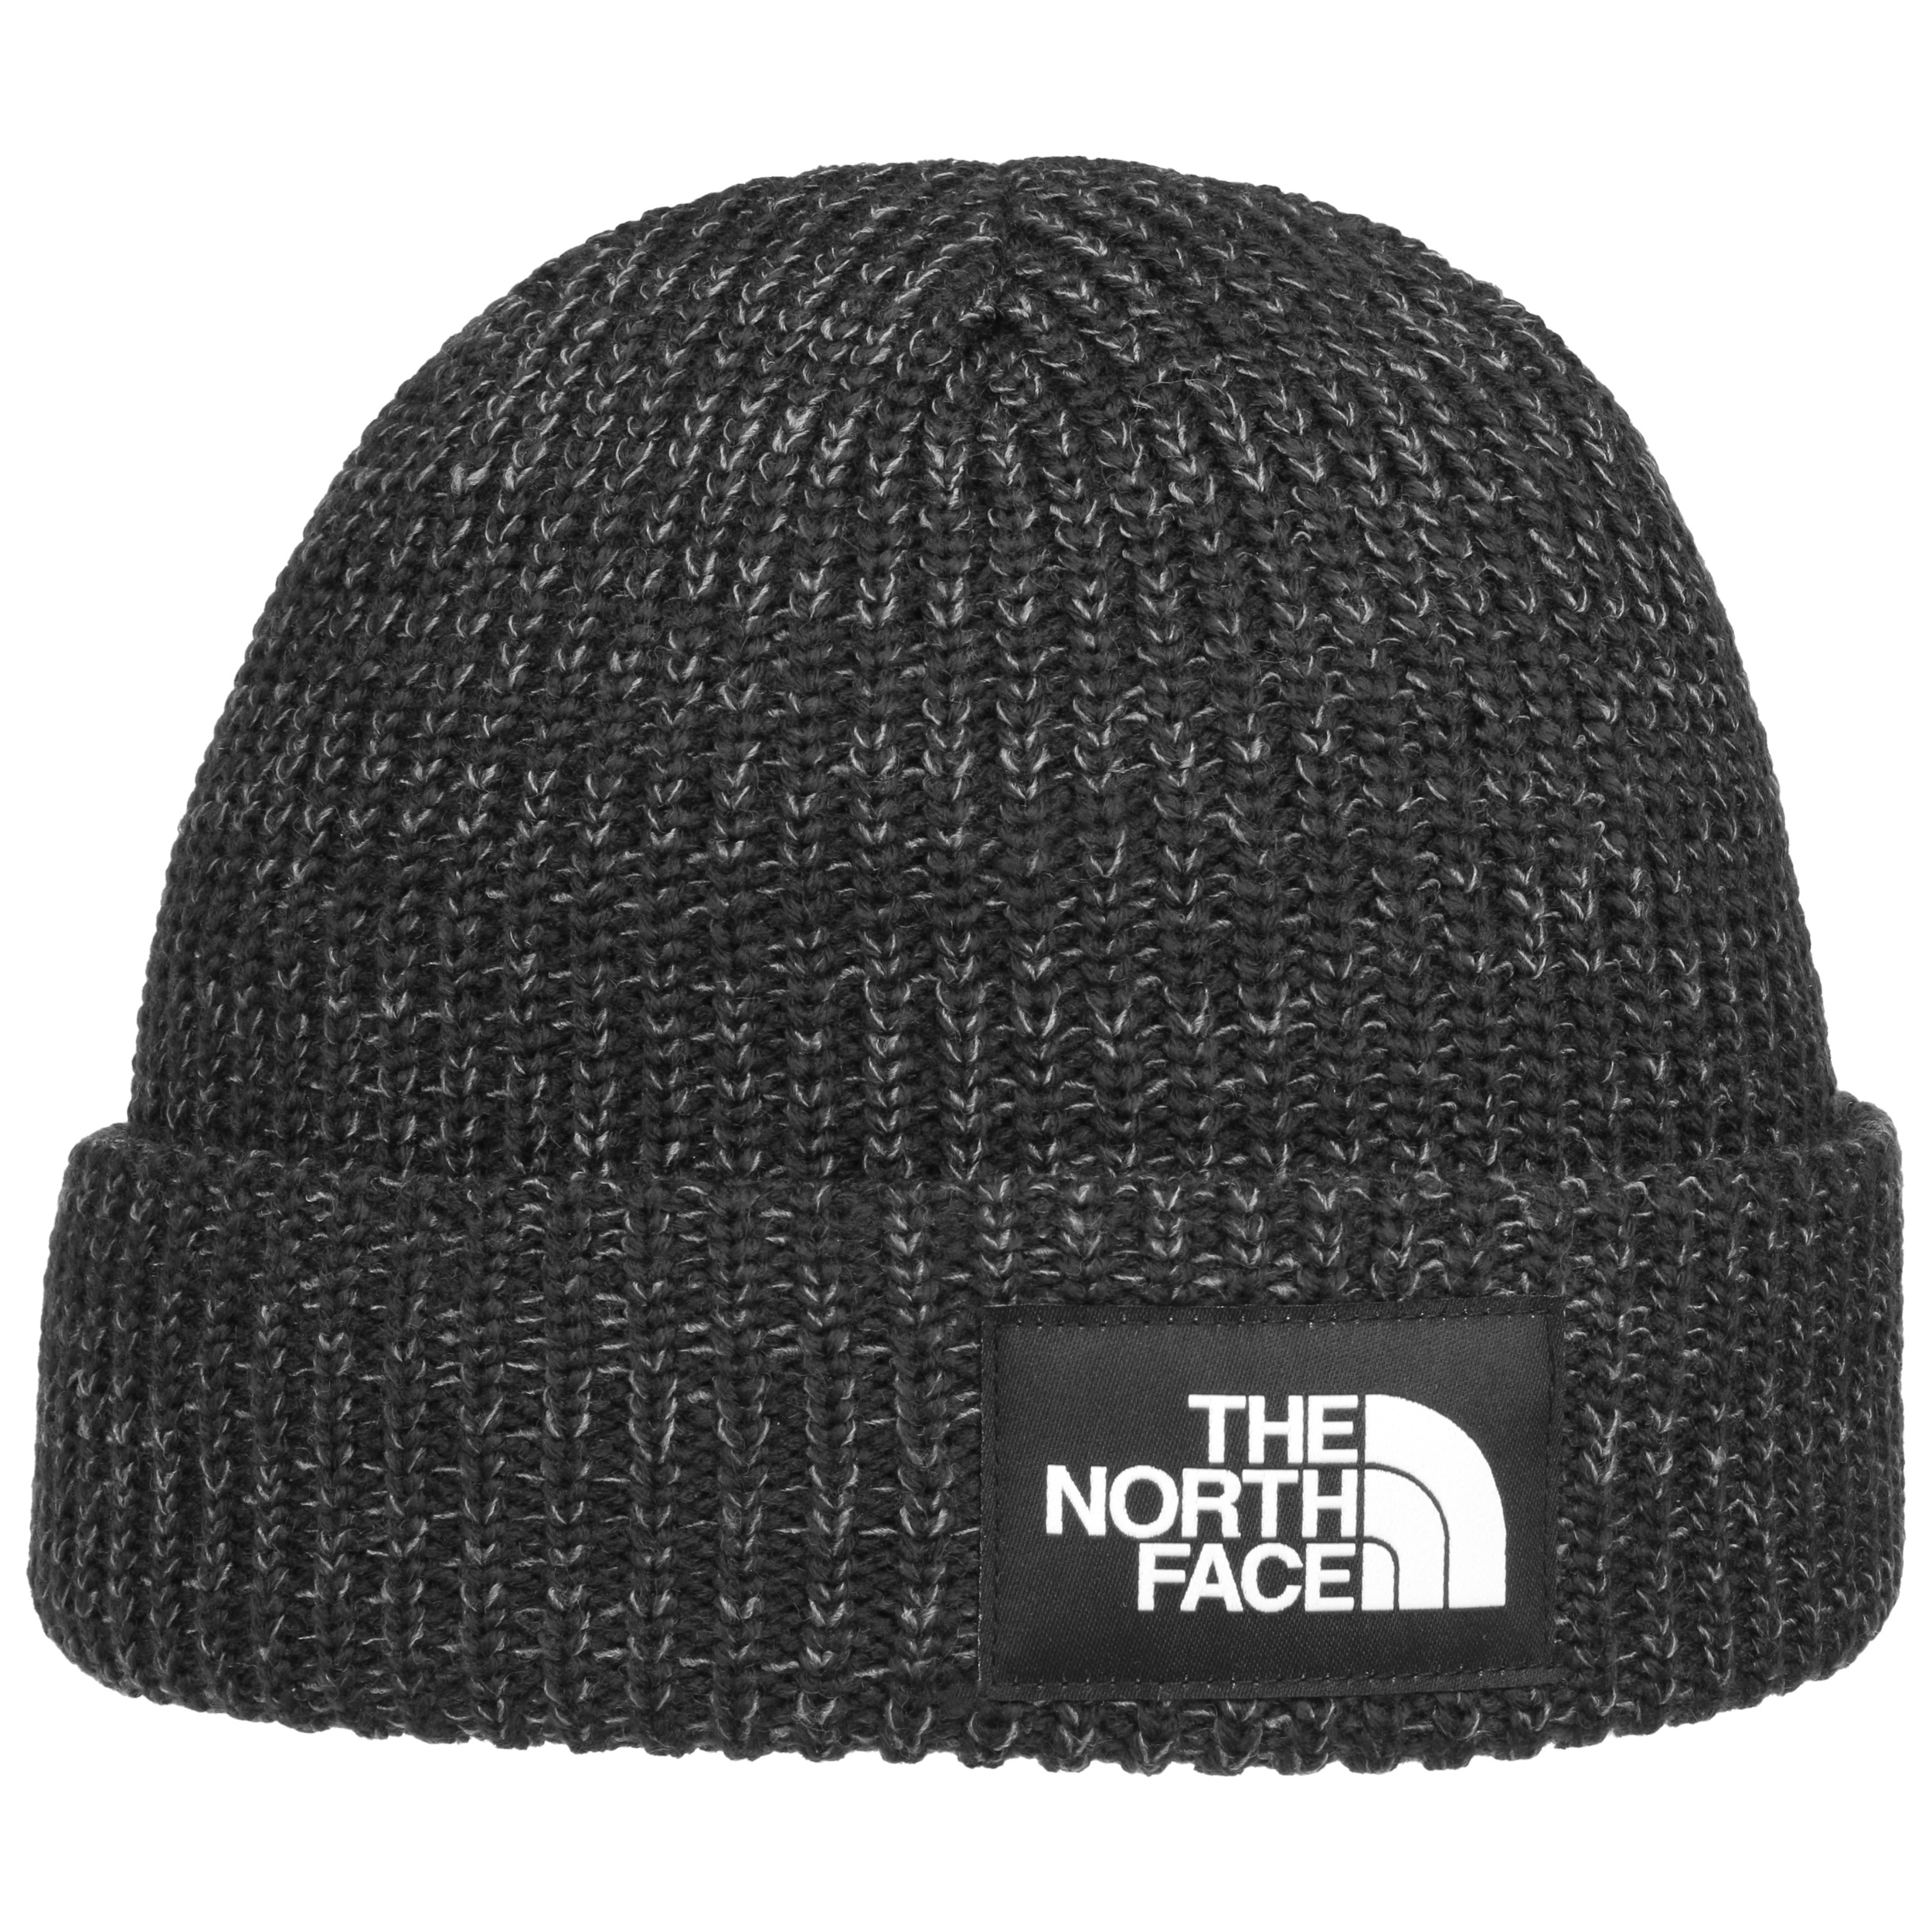 The North Face Salty Dog Beanie - Bonnet, Achat en ligne